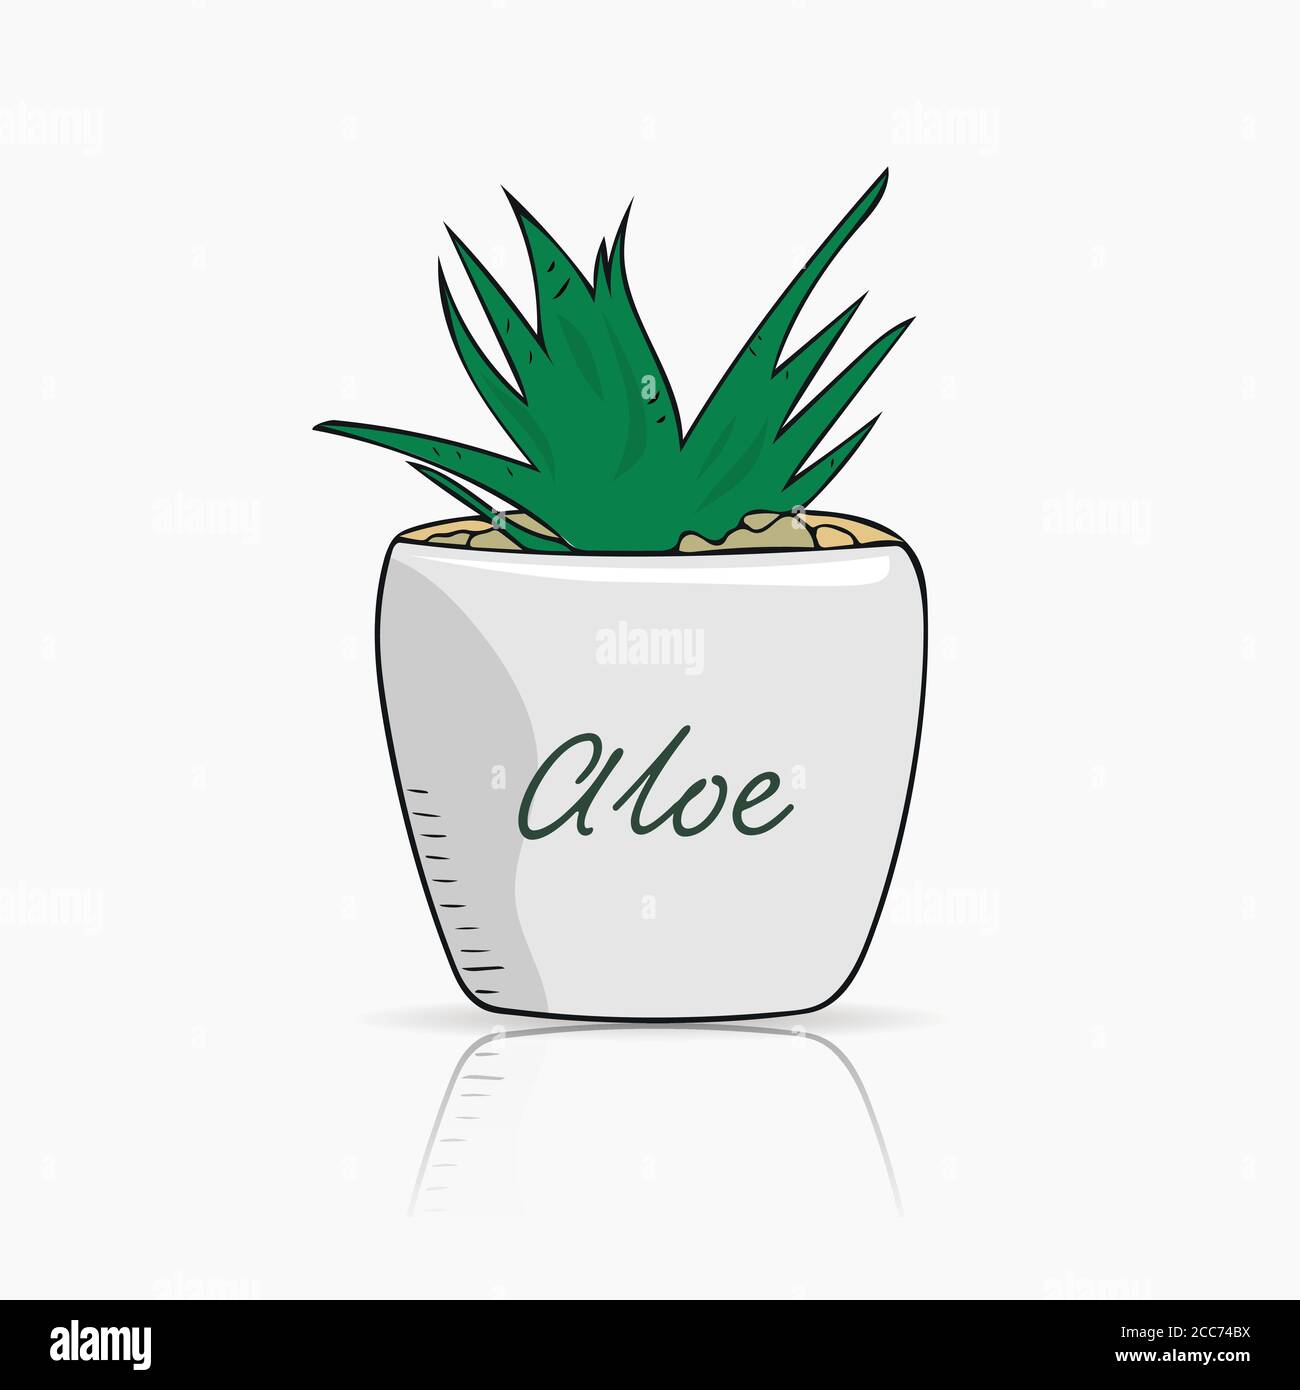 Handgezeichnete Aloe Vera in einem kleinen weißen Keramiktopf. Wunderschöne florale Designelemente. Vereinfachte Vektordarstellung Stock Vektor